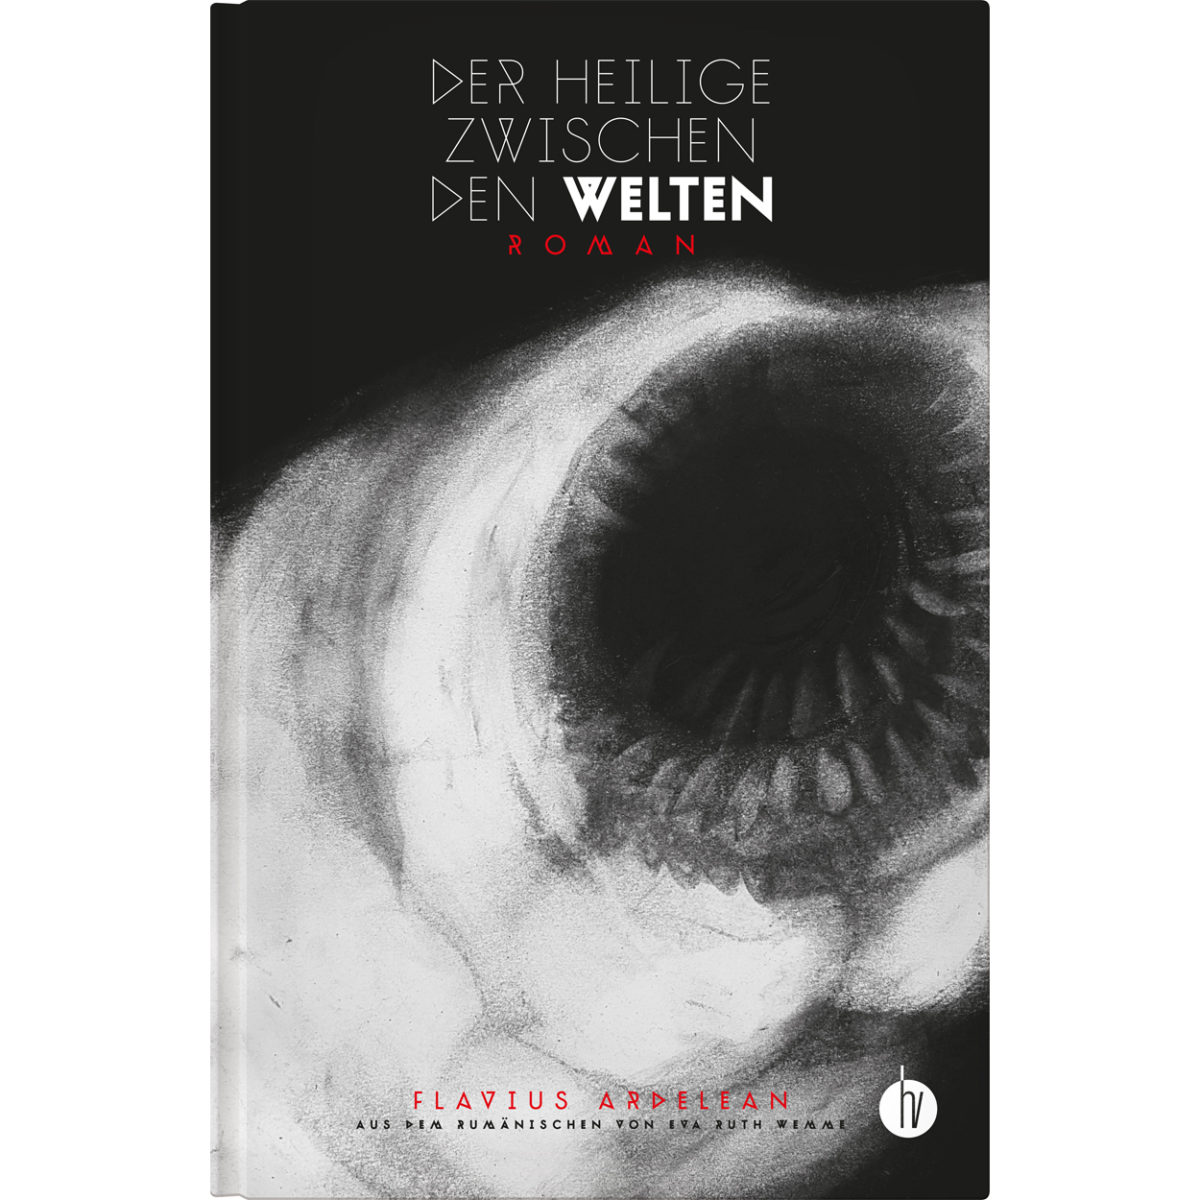 Flavius Ardelean: Der Heilige zwischen den Welten (Hardcover, Deutsch language, 2021, Homunculus Verlag)